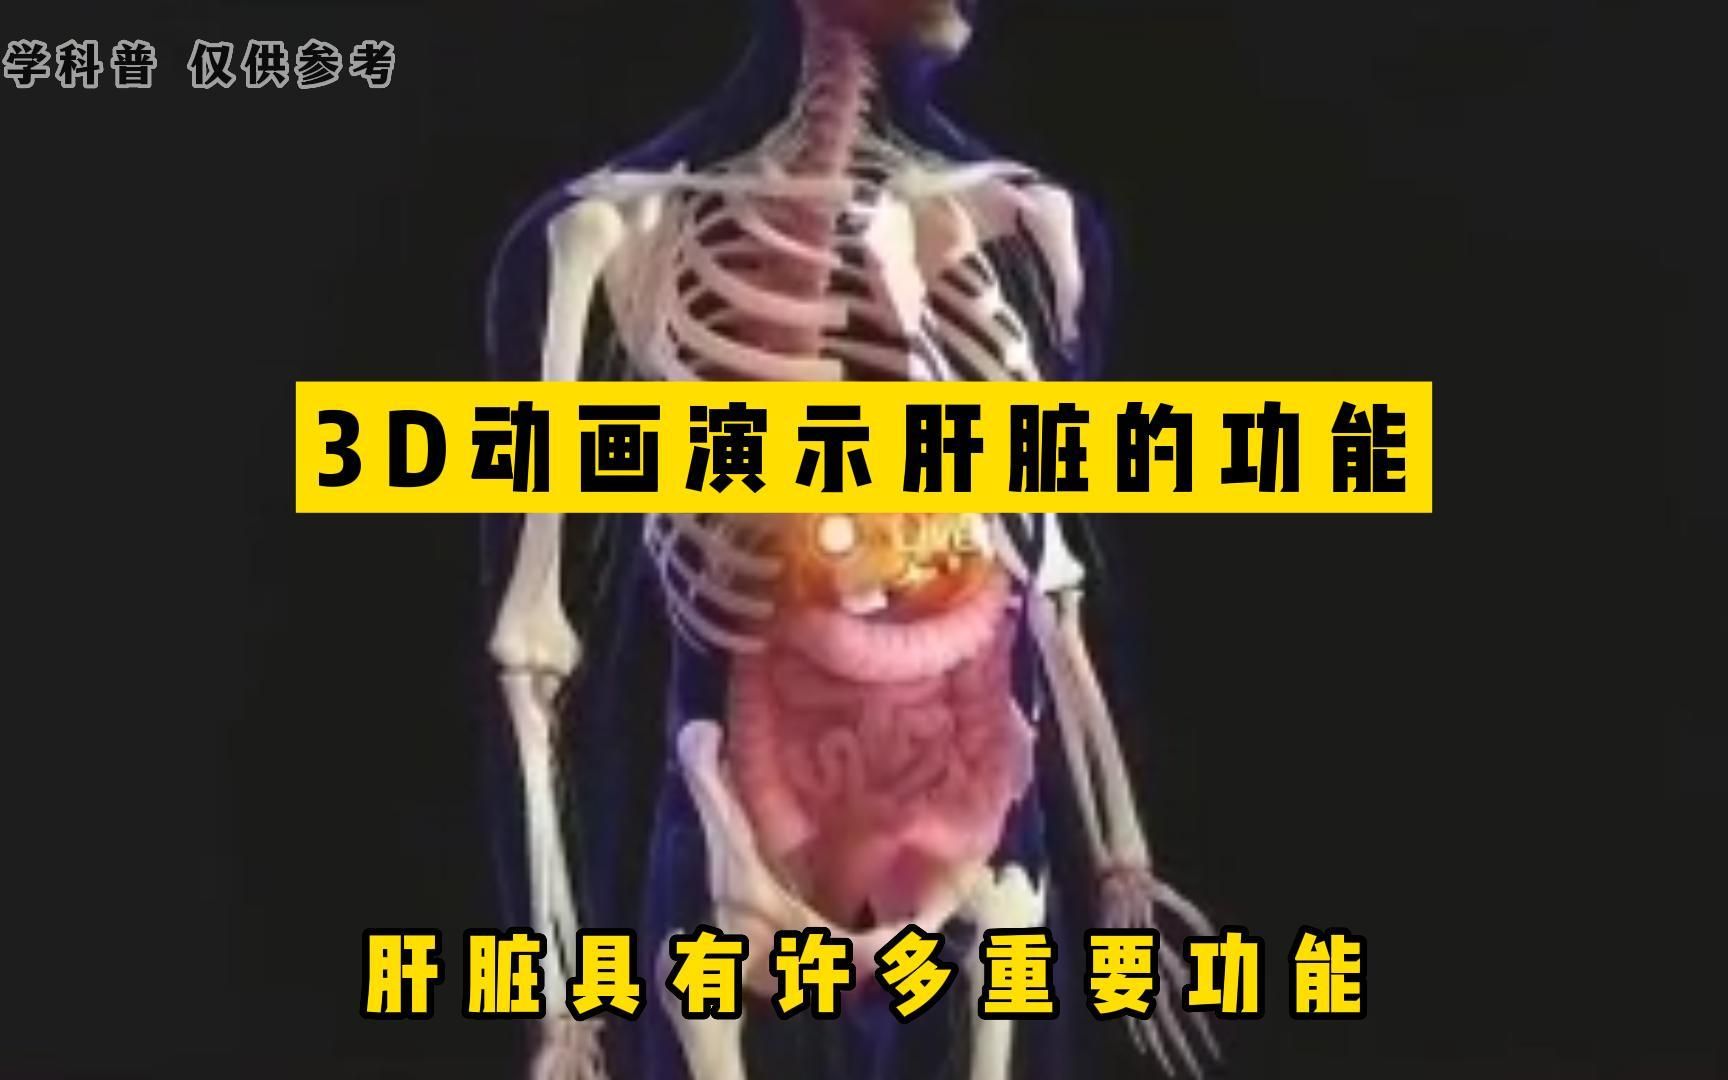 3D动画演示肝脏的功能